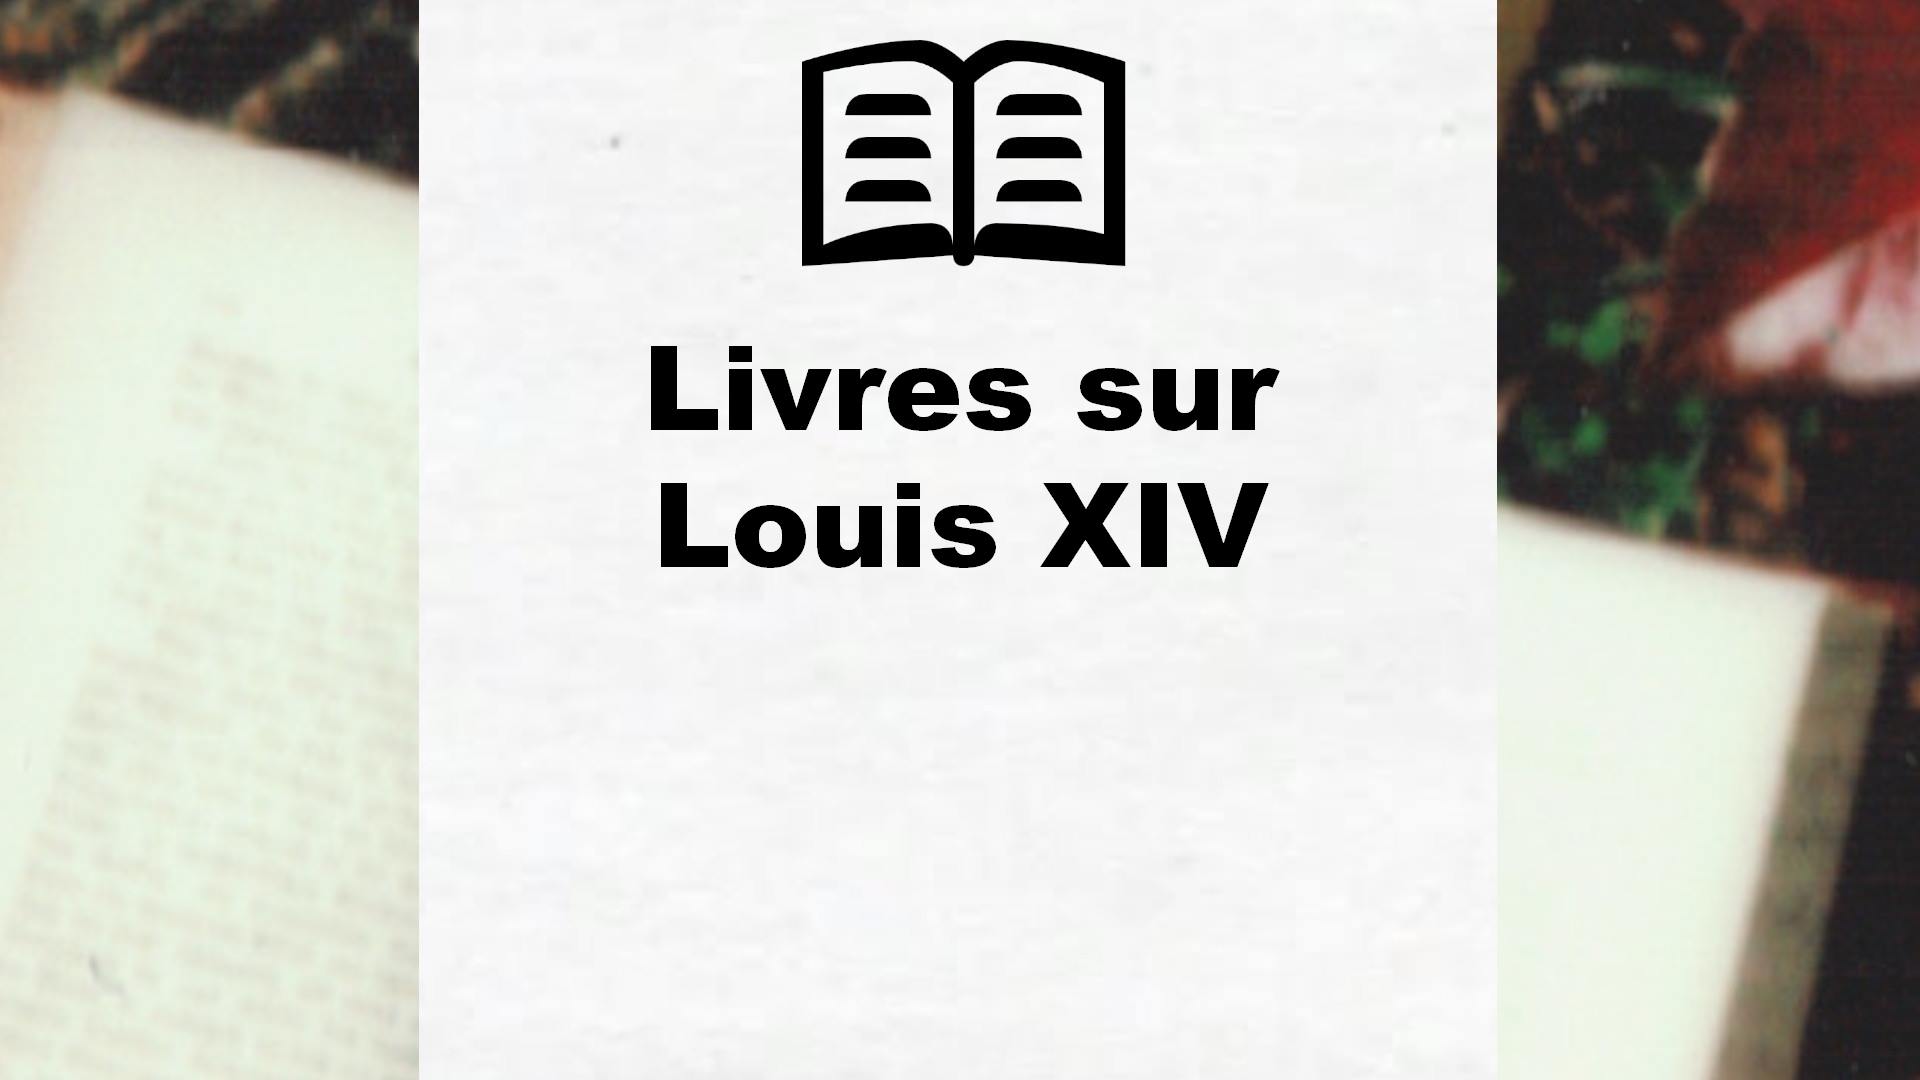 Livres sur Louis XIV